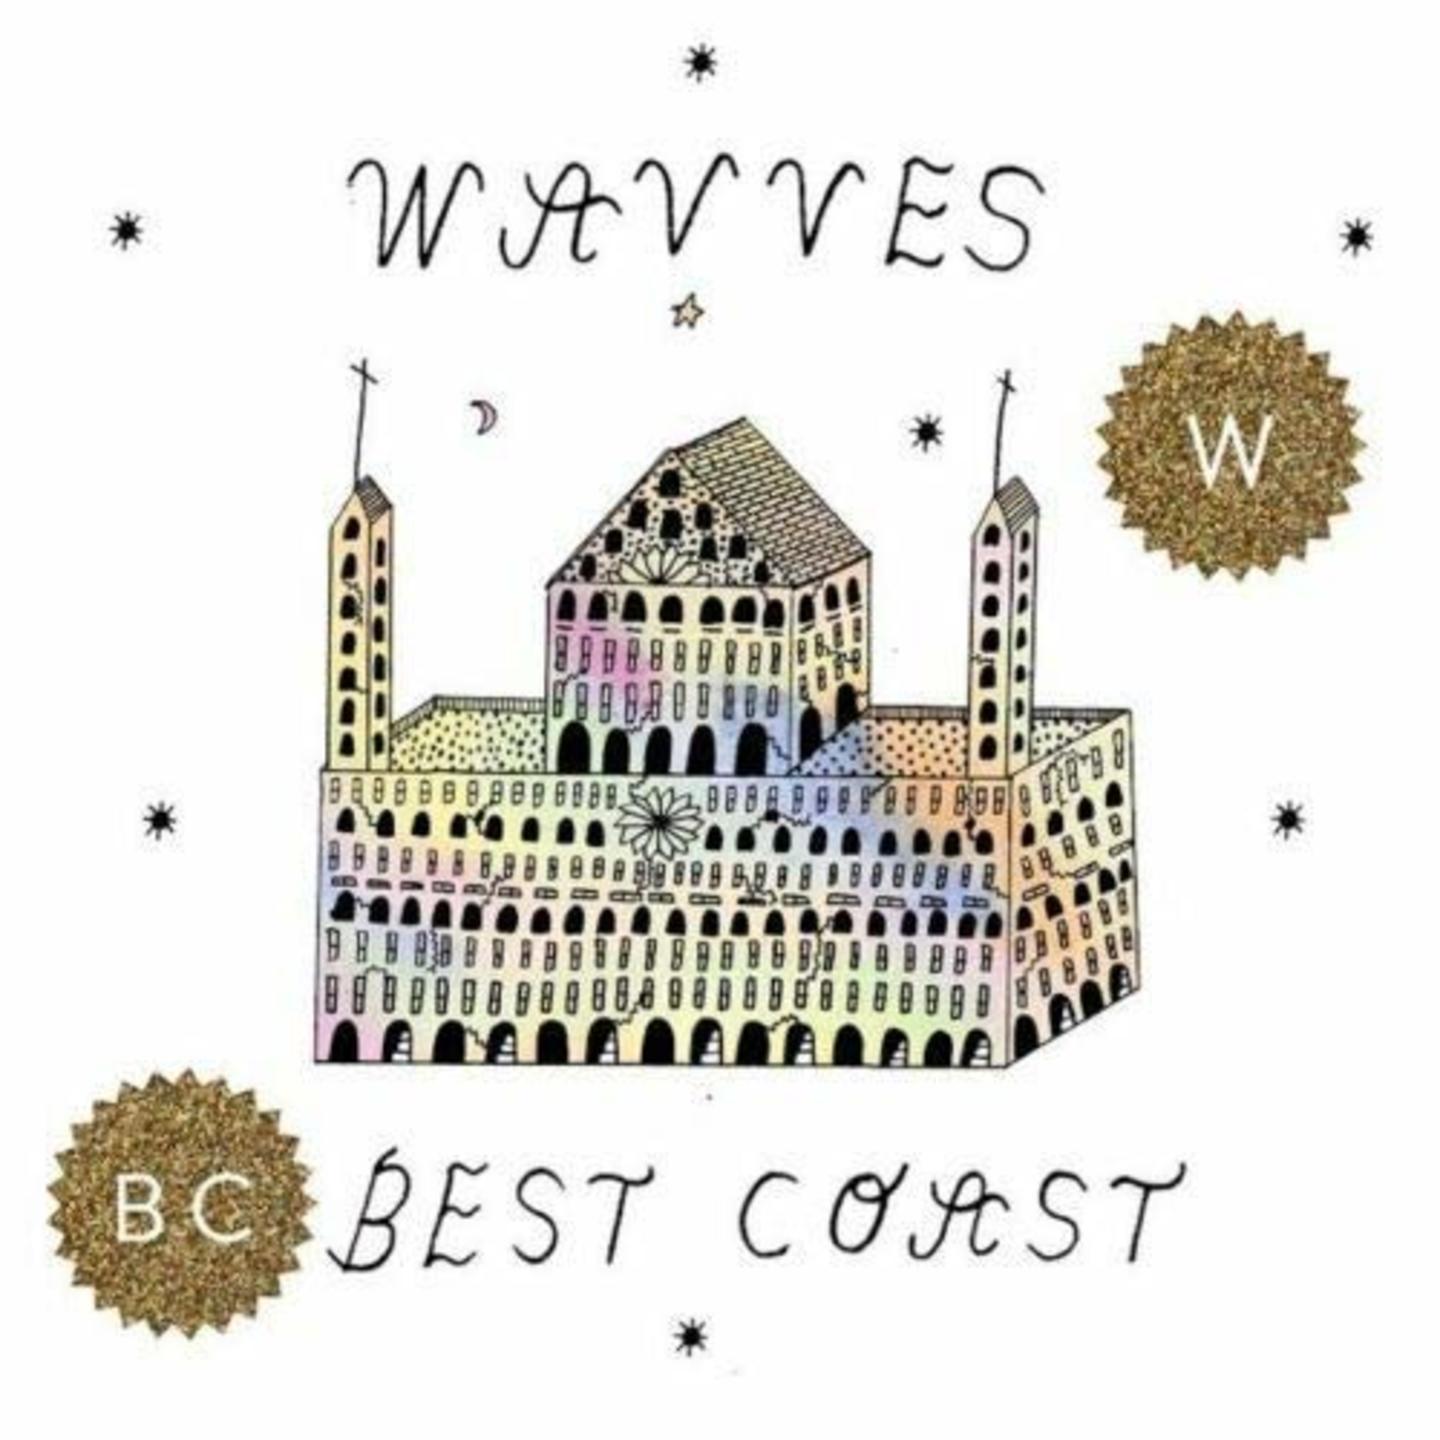 BEST COAST / WAVVES - Dreams Of Grandeur: Split 7" (Colour Vinyl)